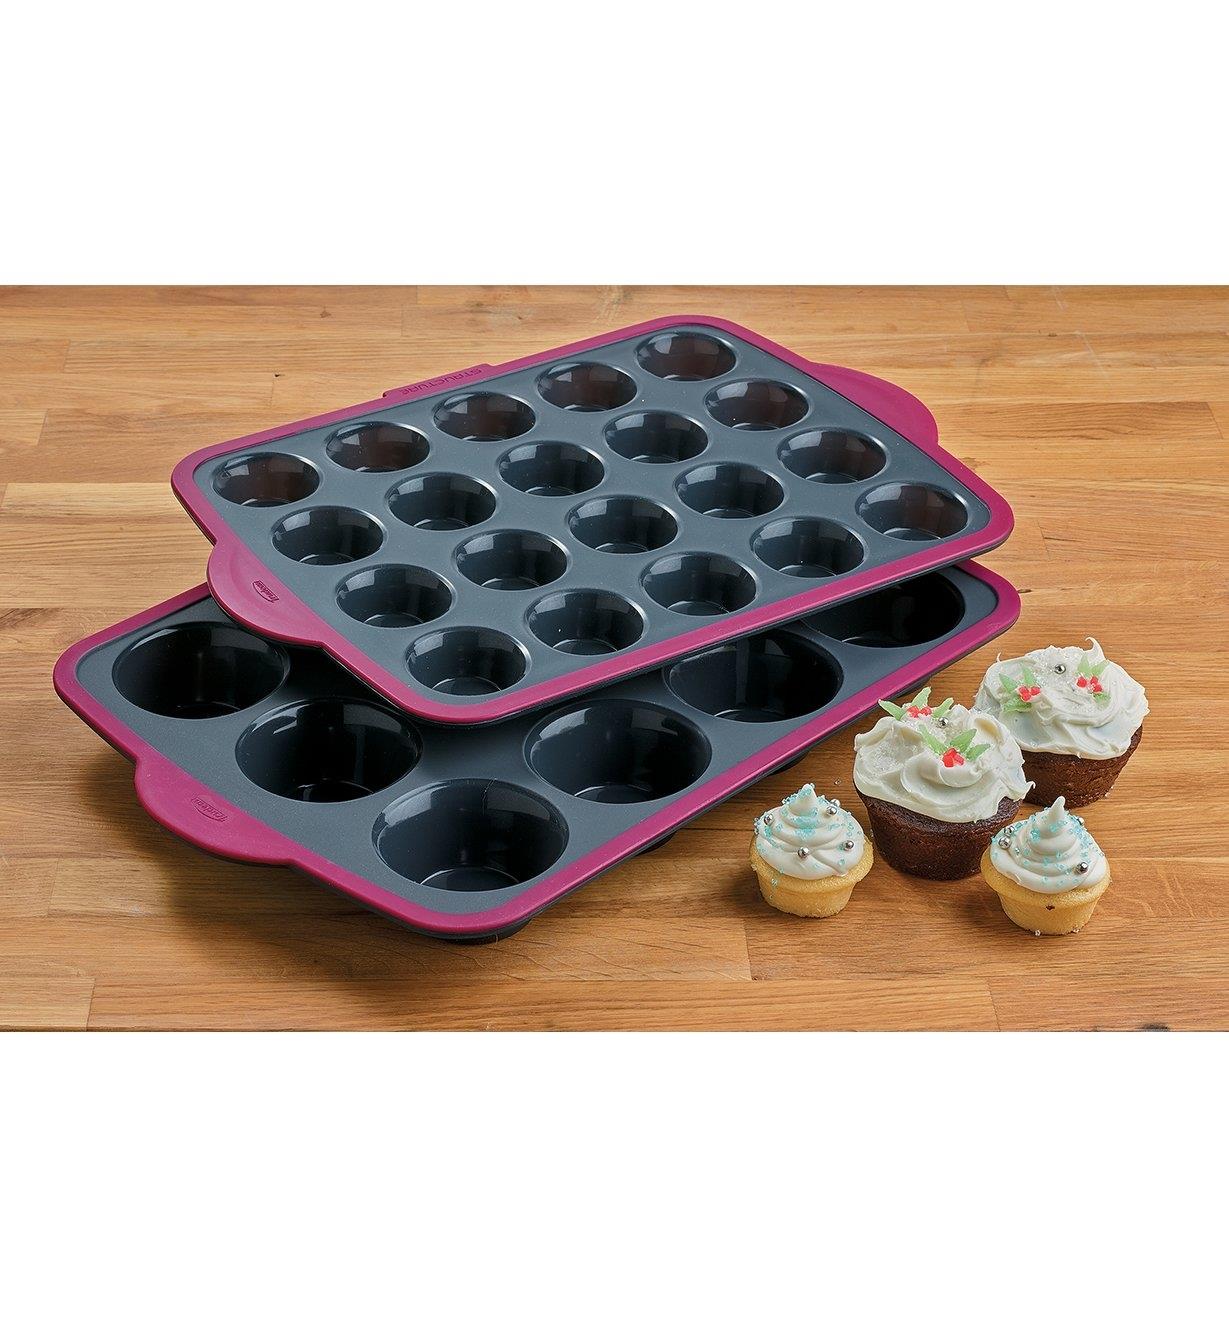 Moule à muffins et moule à minimuffins empilés près de quatre petits gâteaux recouverts de glaçage